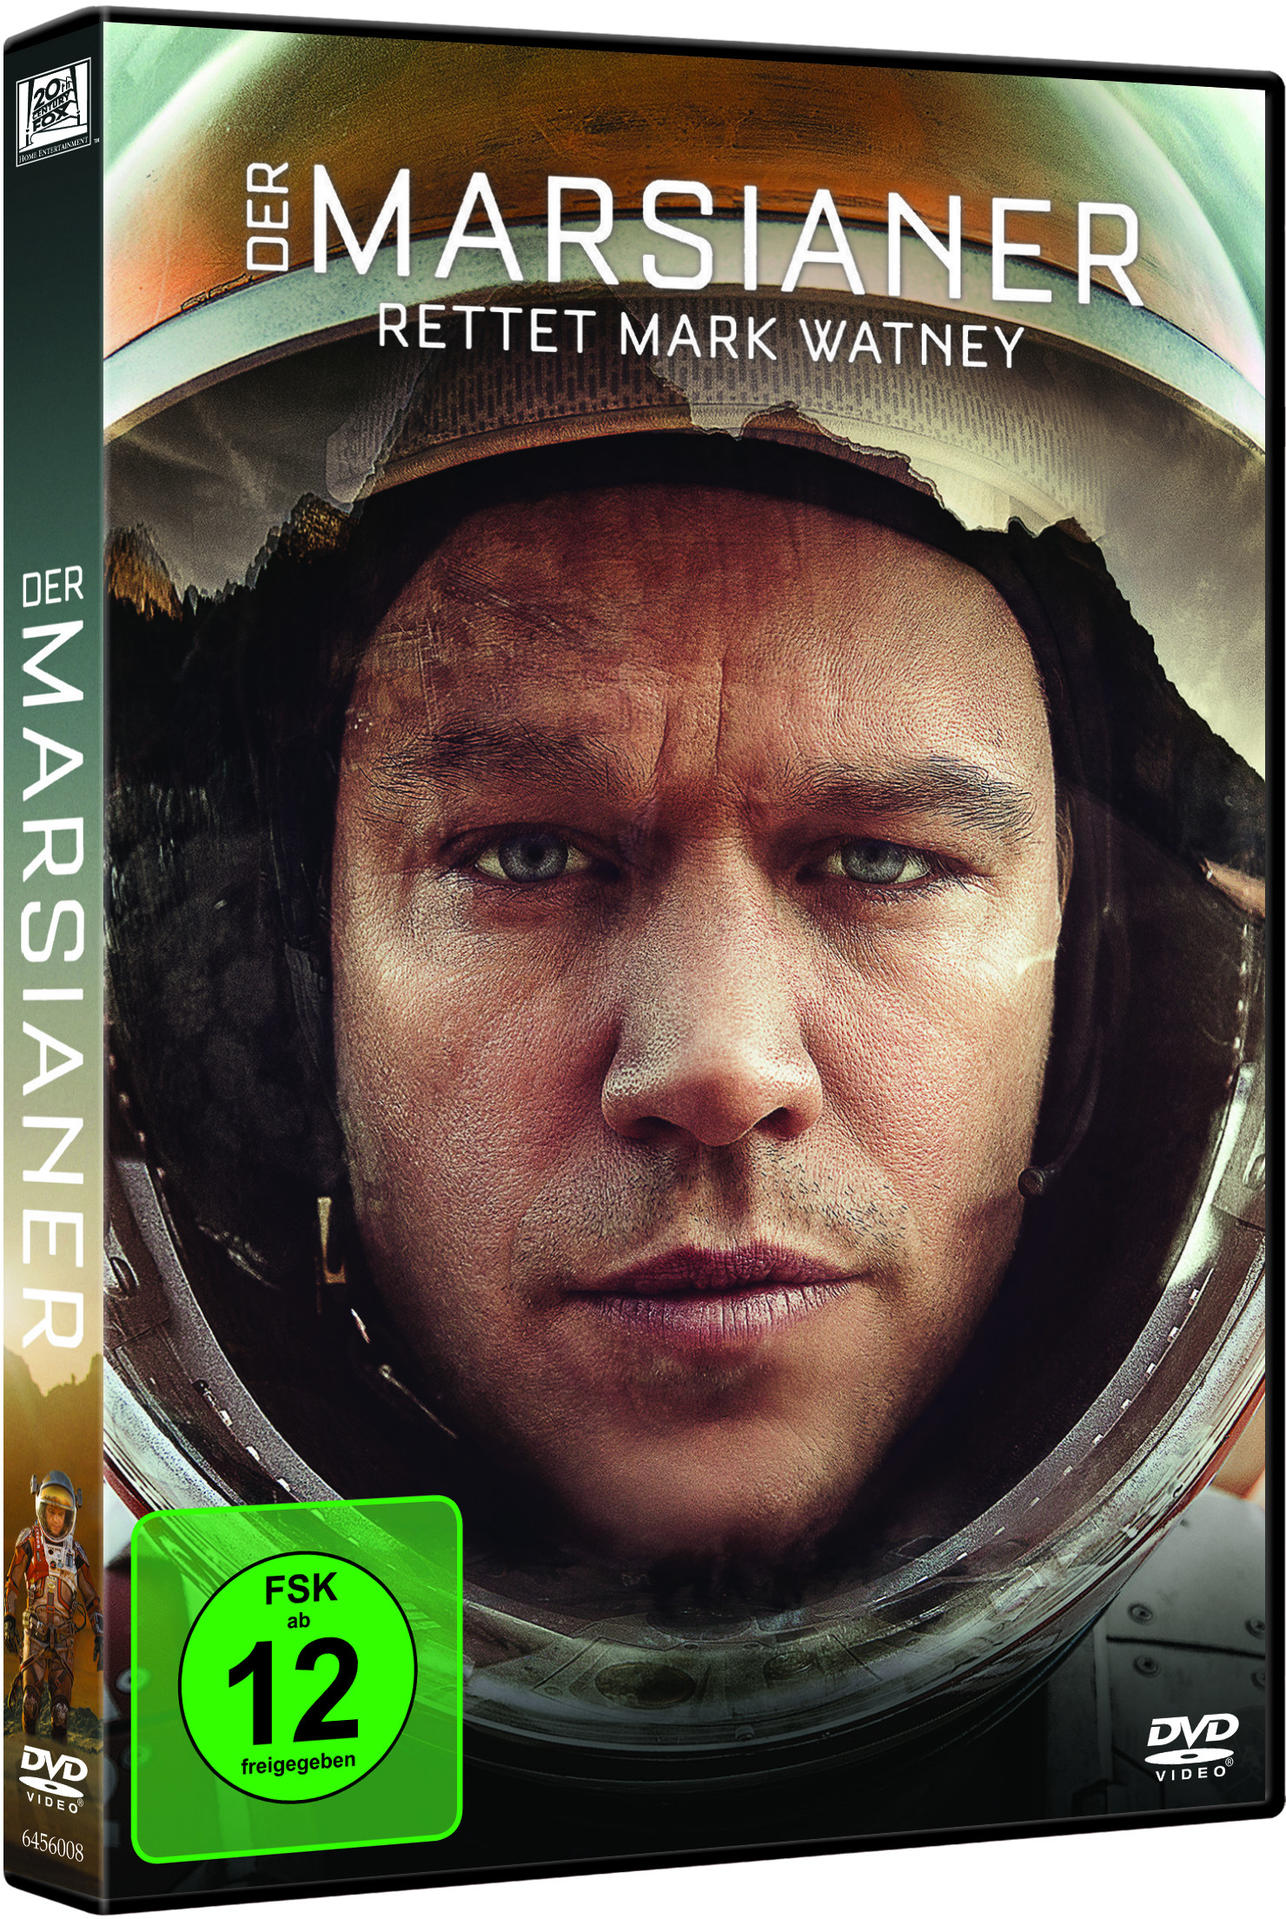 DVD Rettet Der Watney Mark Marsianer -